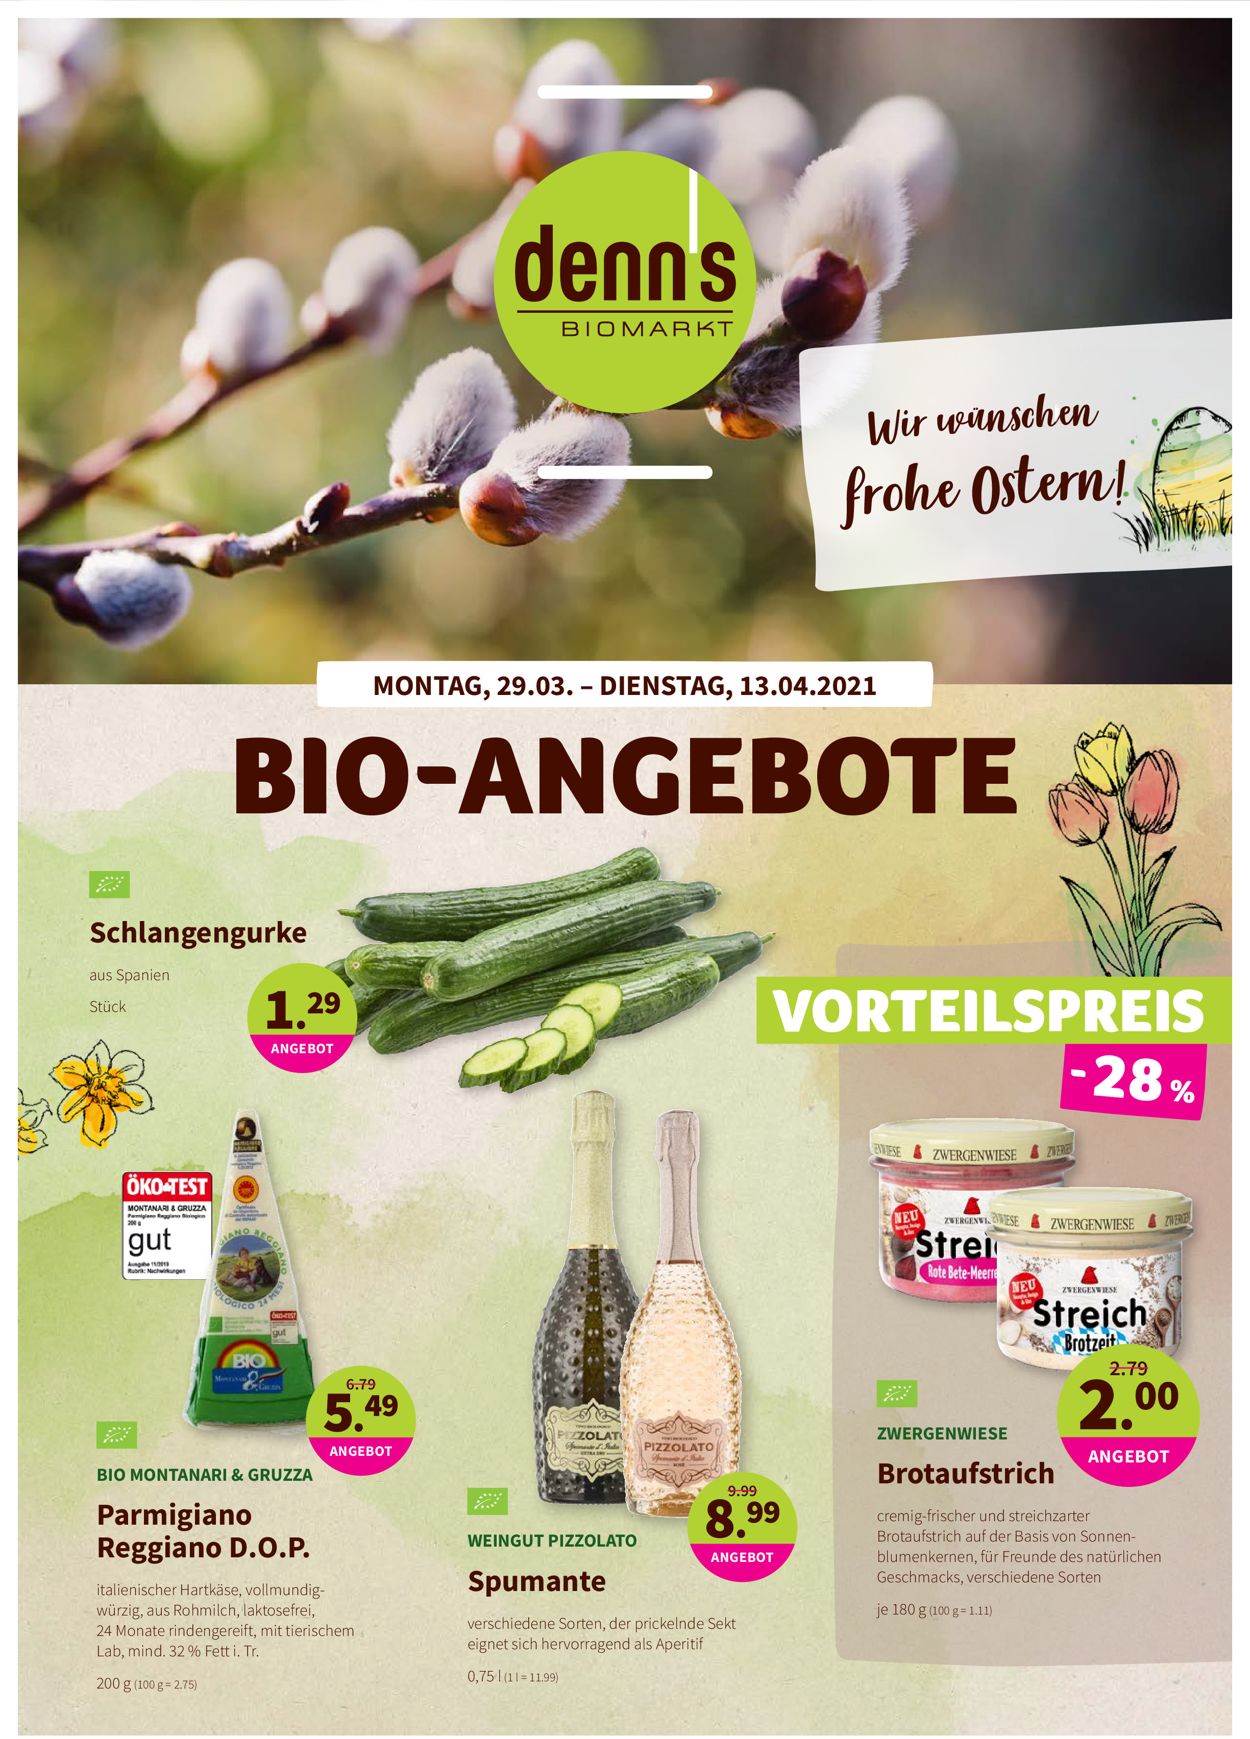 Denn's Biomarkt Ostern 2021 Prospekt - Aktuell vom 29.03-13.04.2021